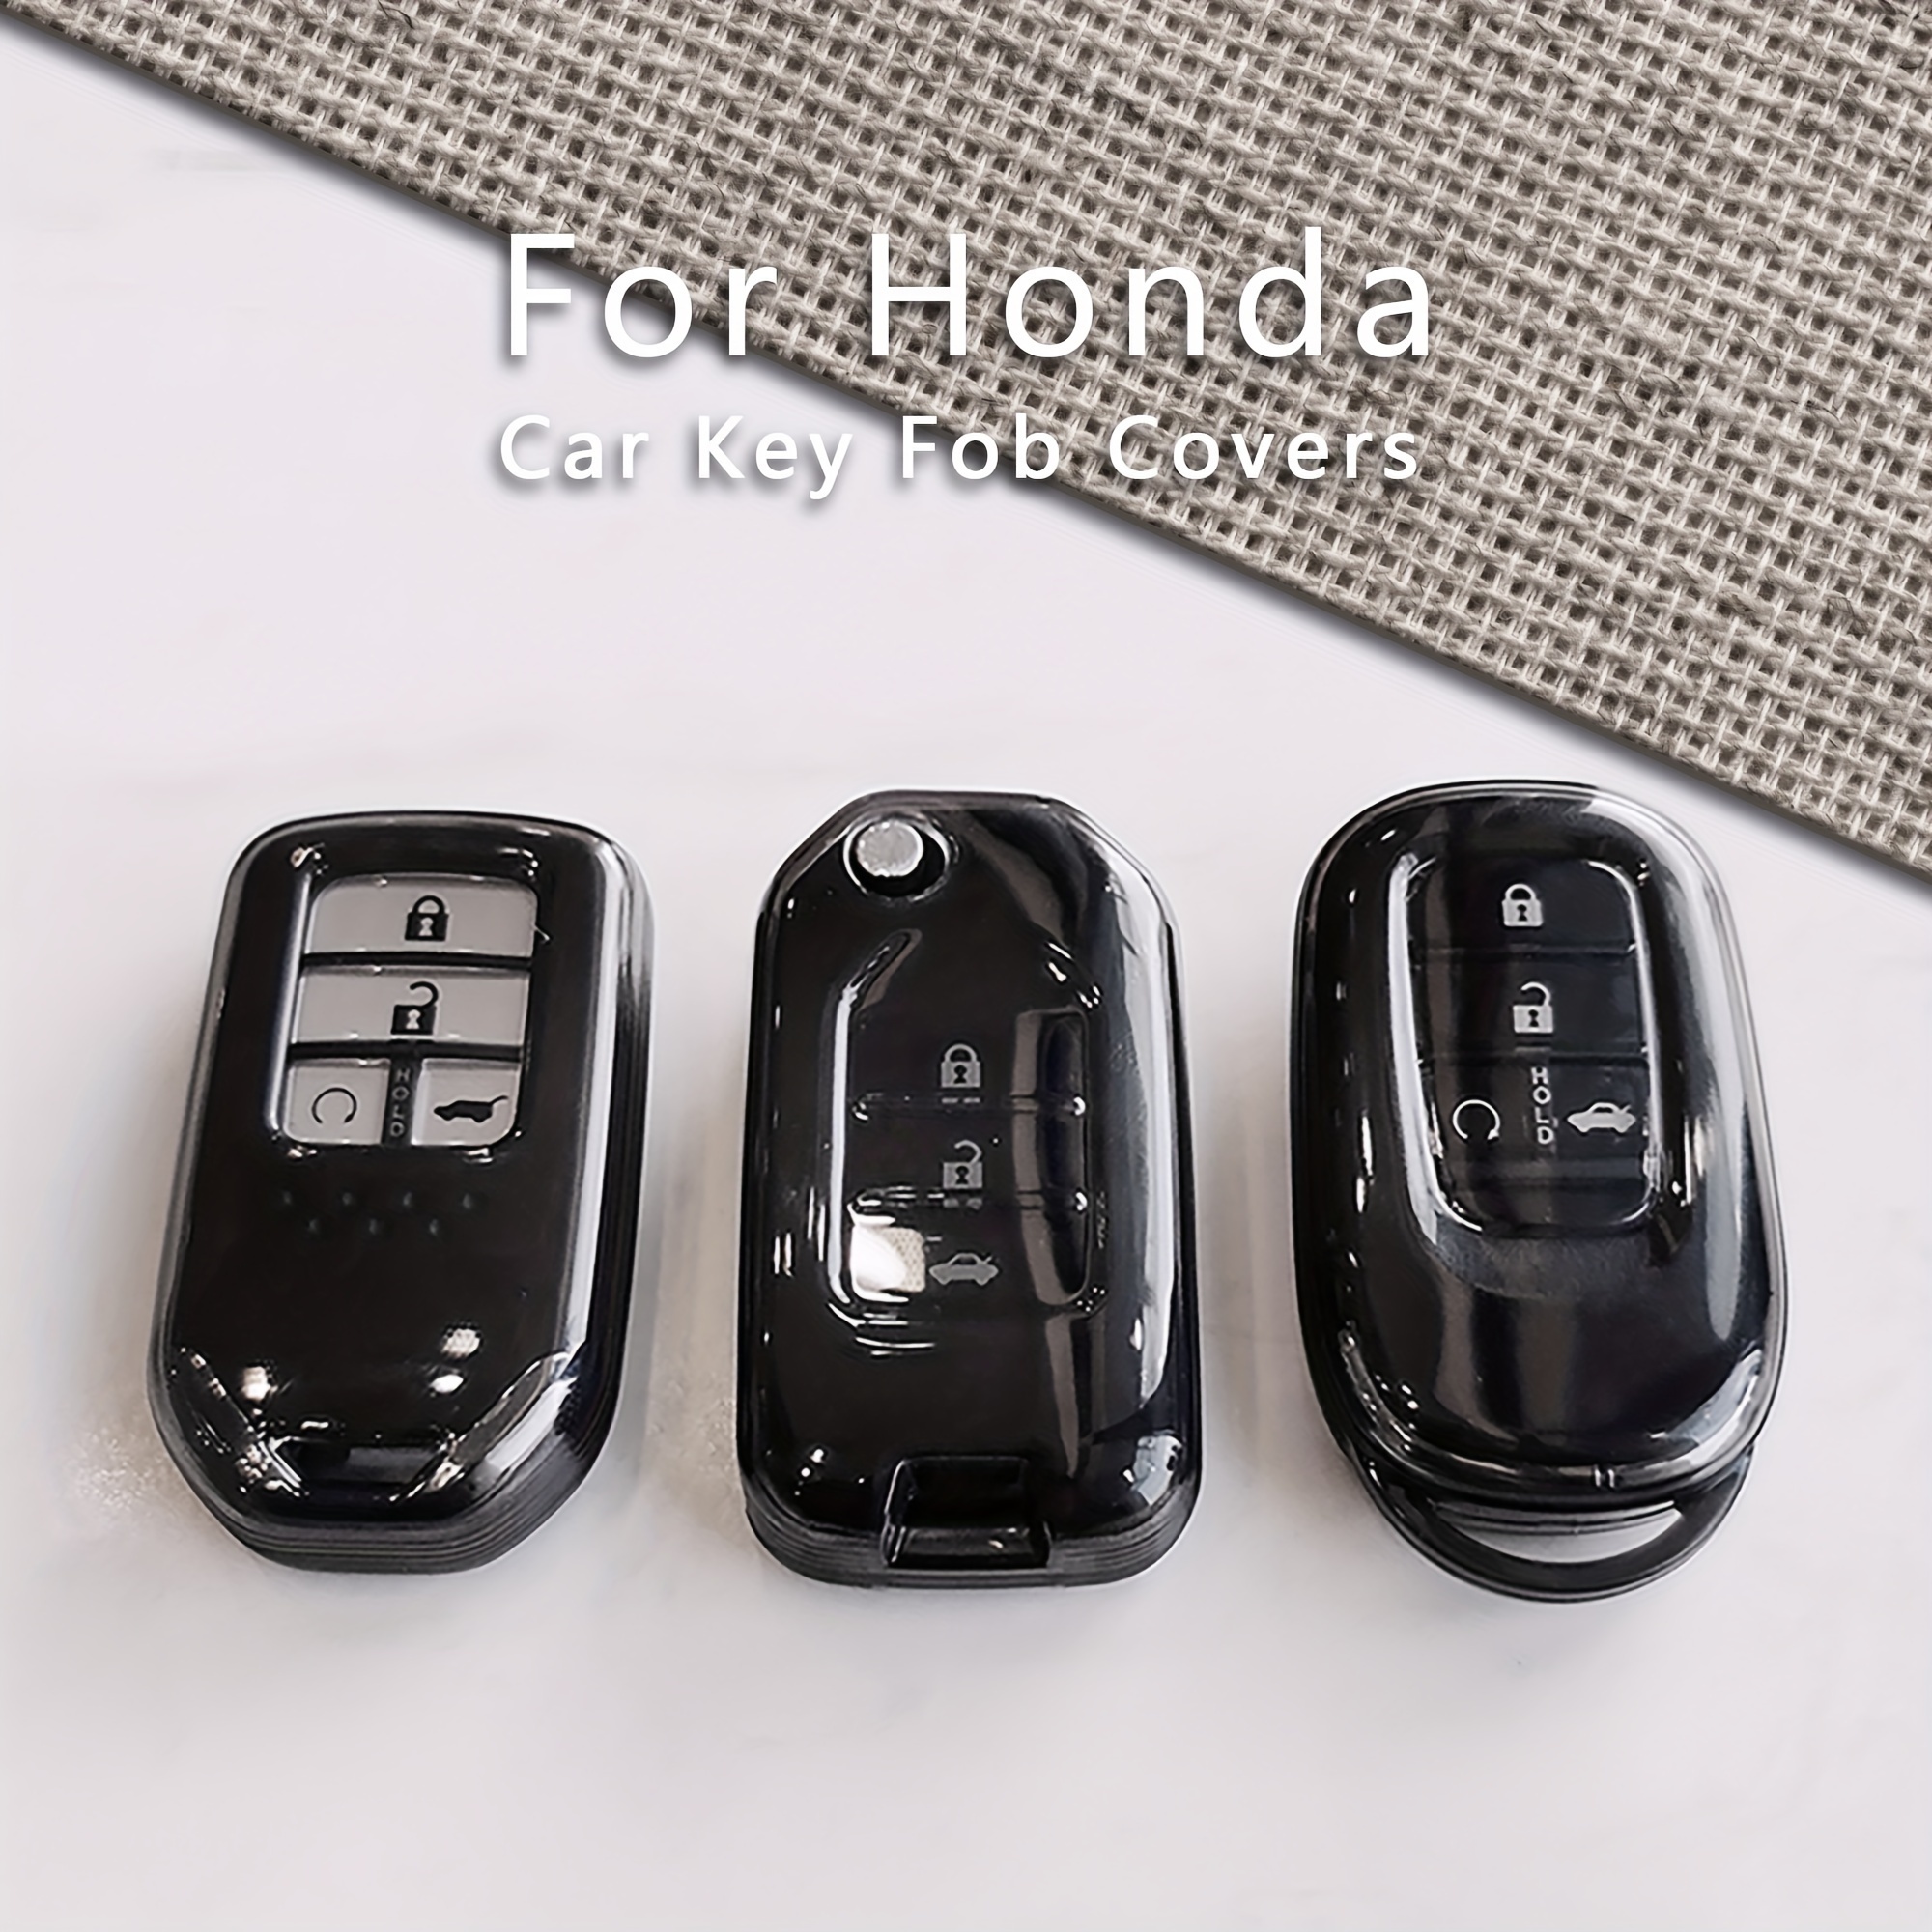 Protecteur couverture boîtier clé voiture à 3 boutons pour Honda Accord MDX  TSX